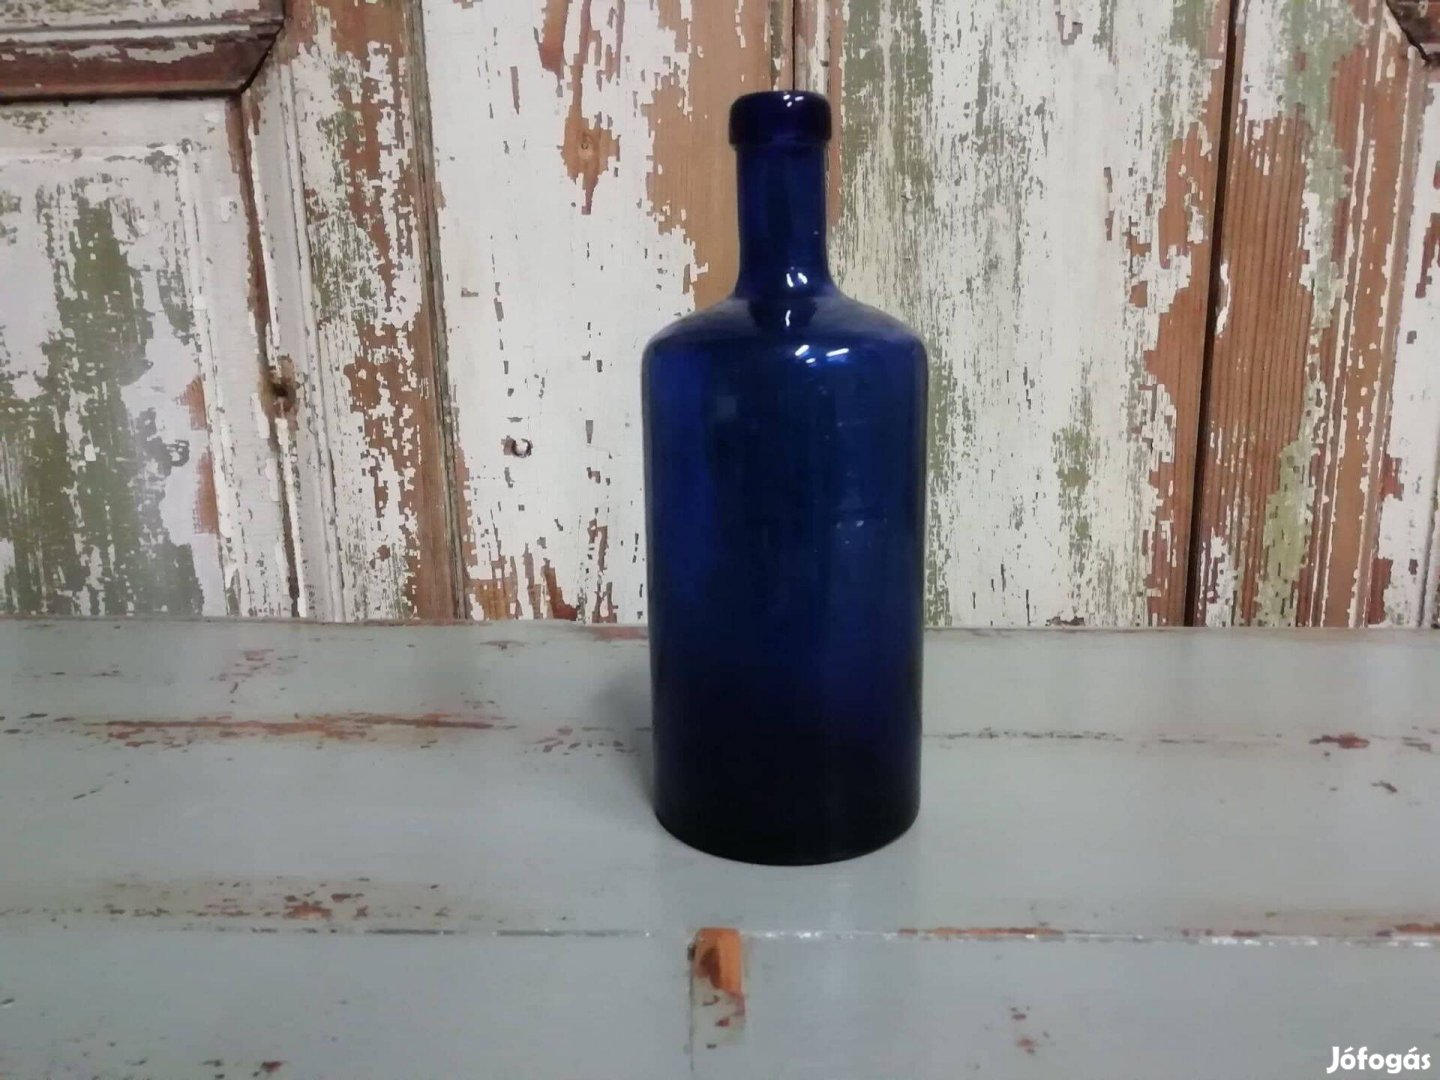 Patikai üveg, kobaltkék színű, 19. század végi, 20. század